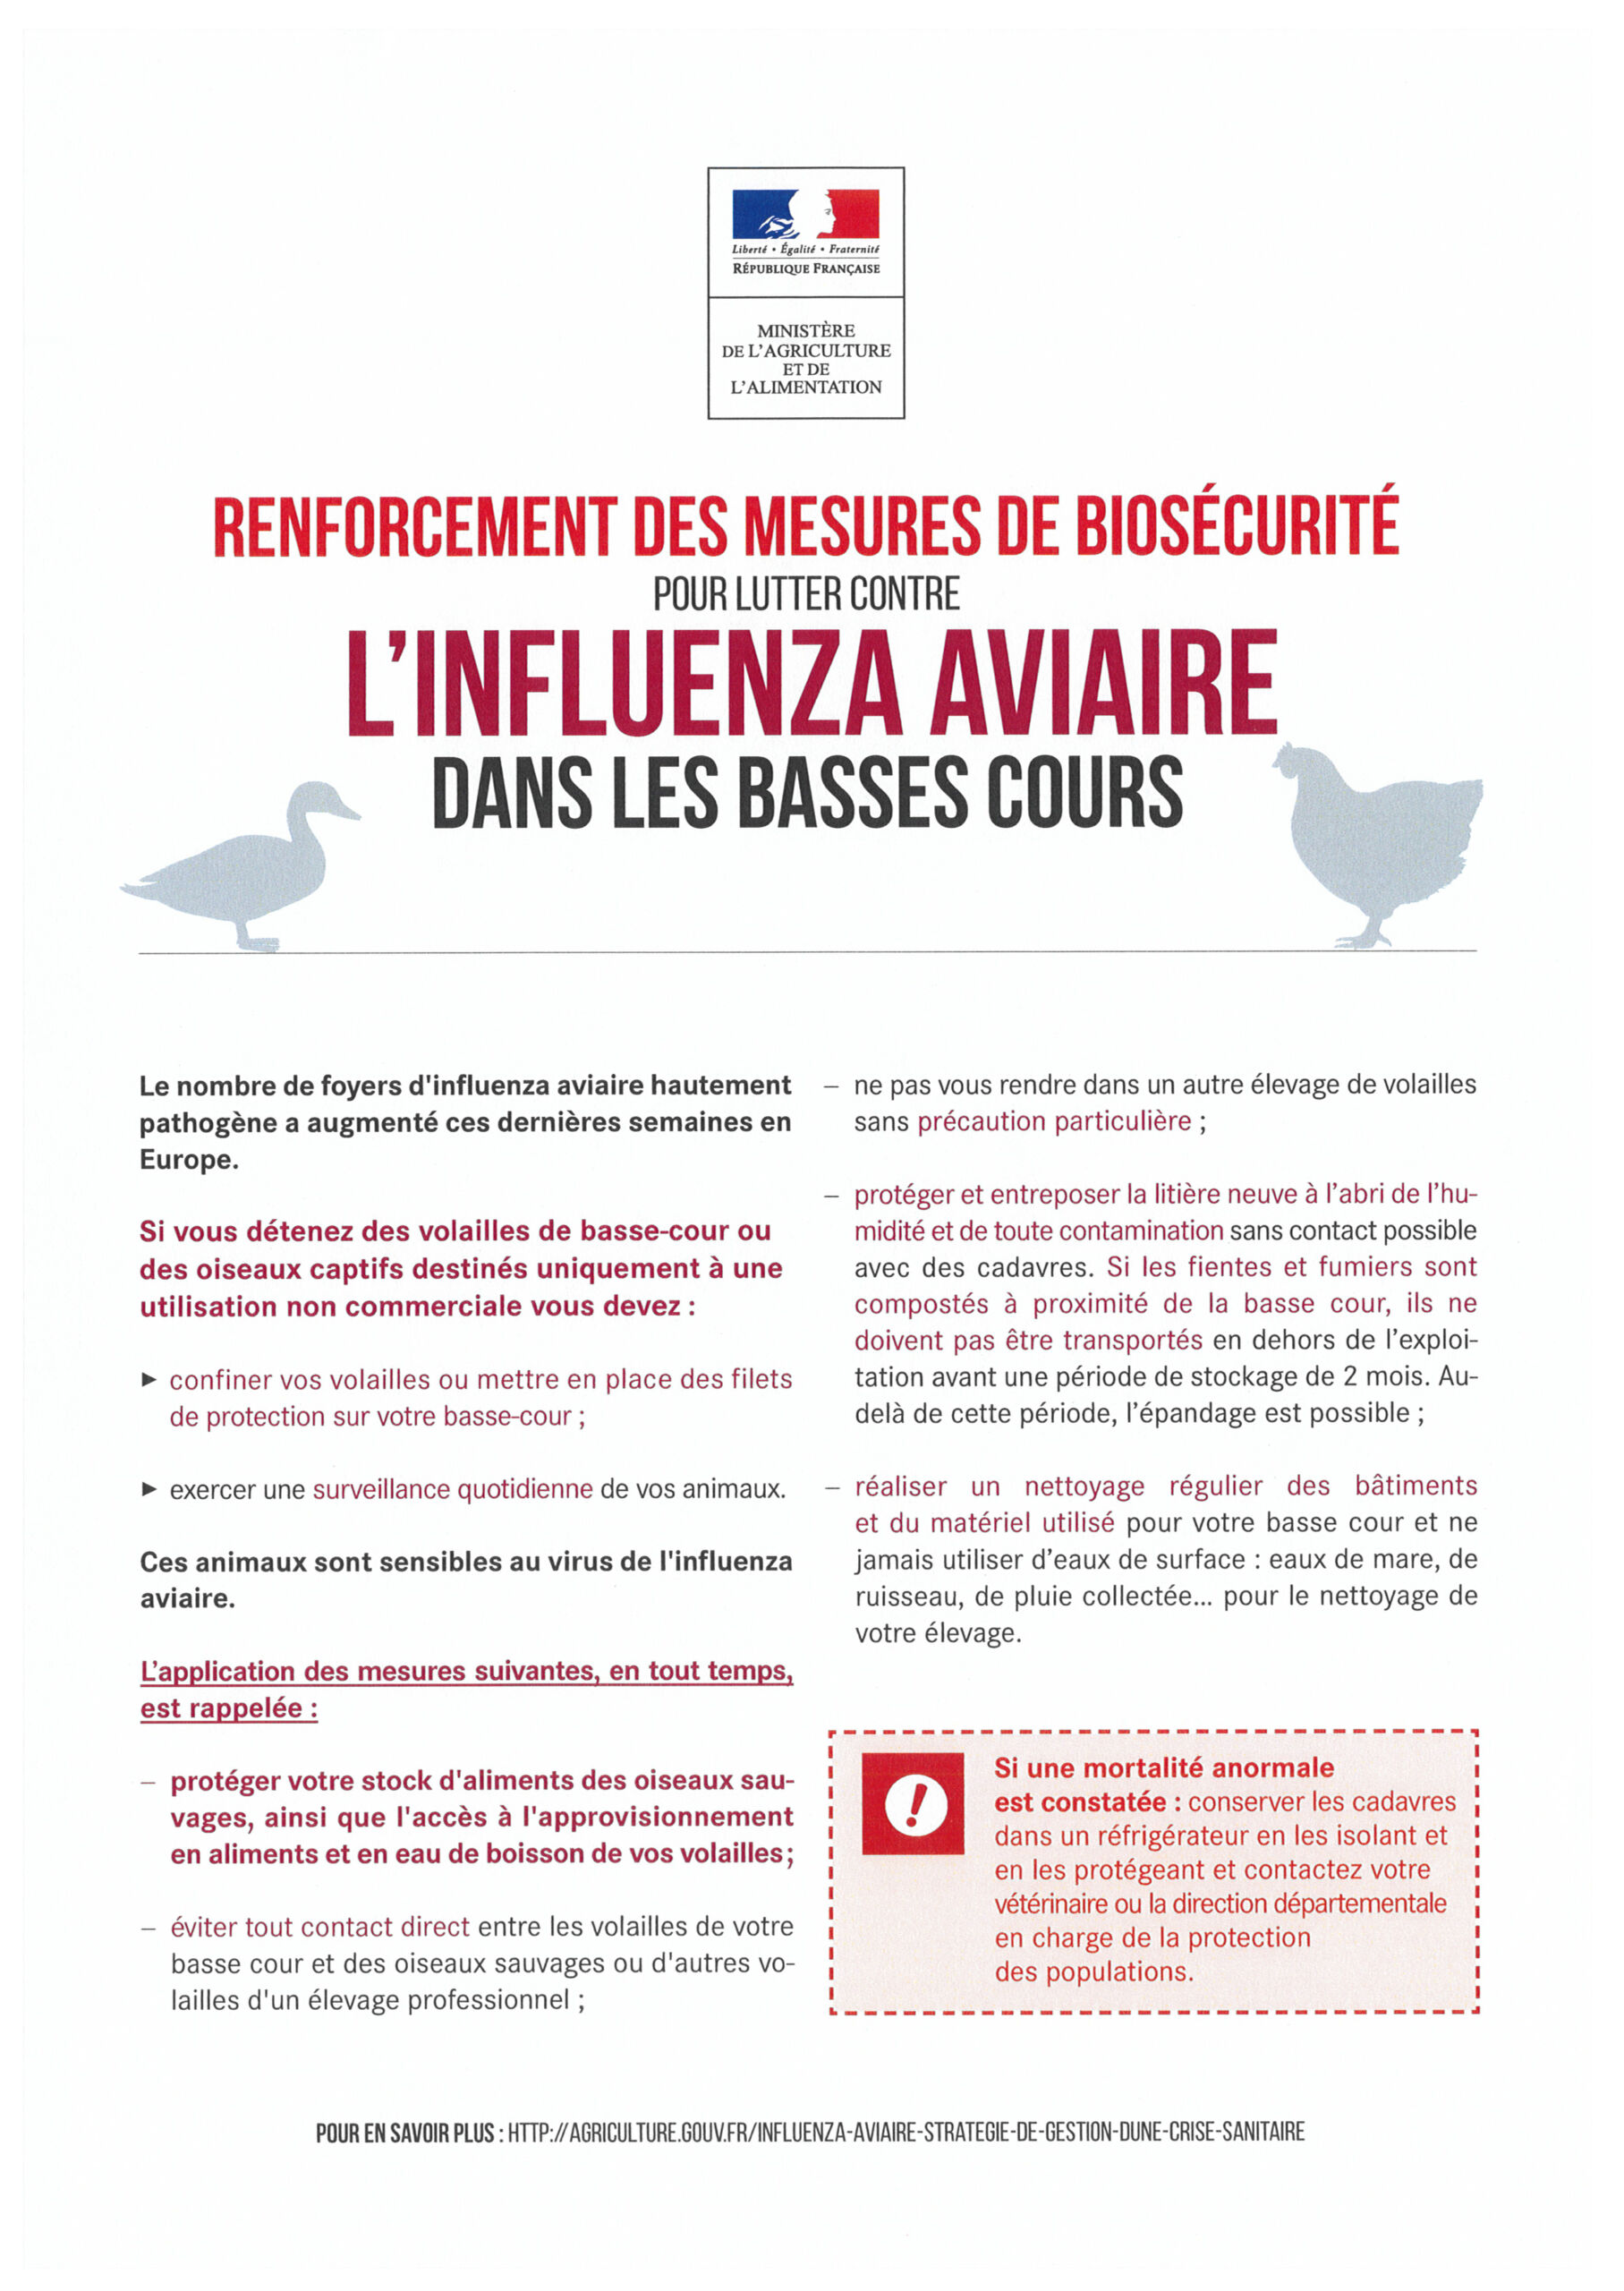 Prévention de l’influenza aviaire – élévation du niveau de risque